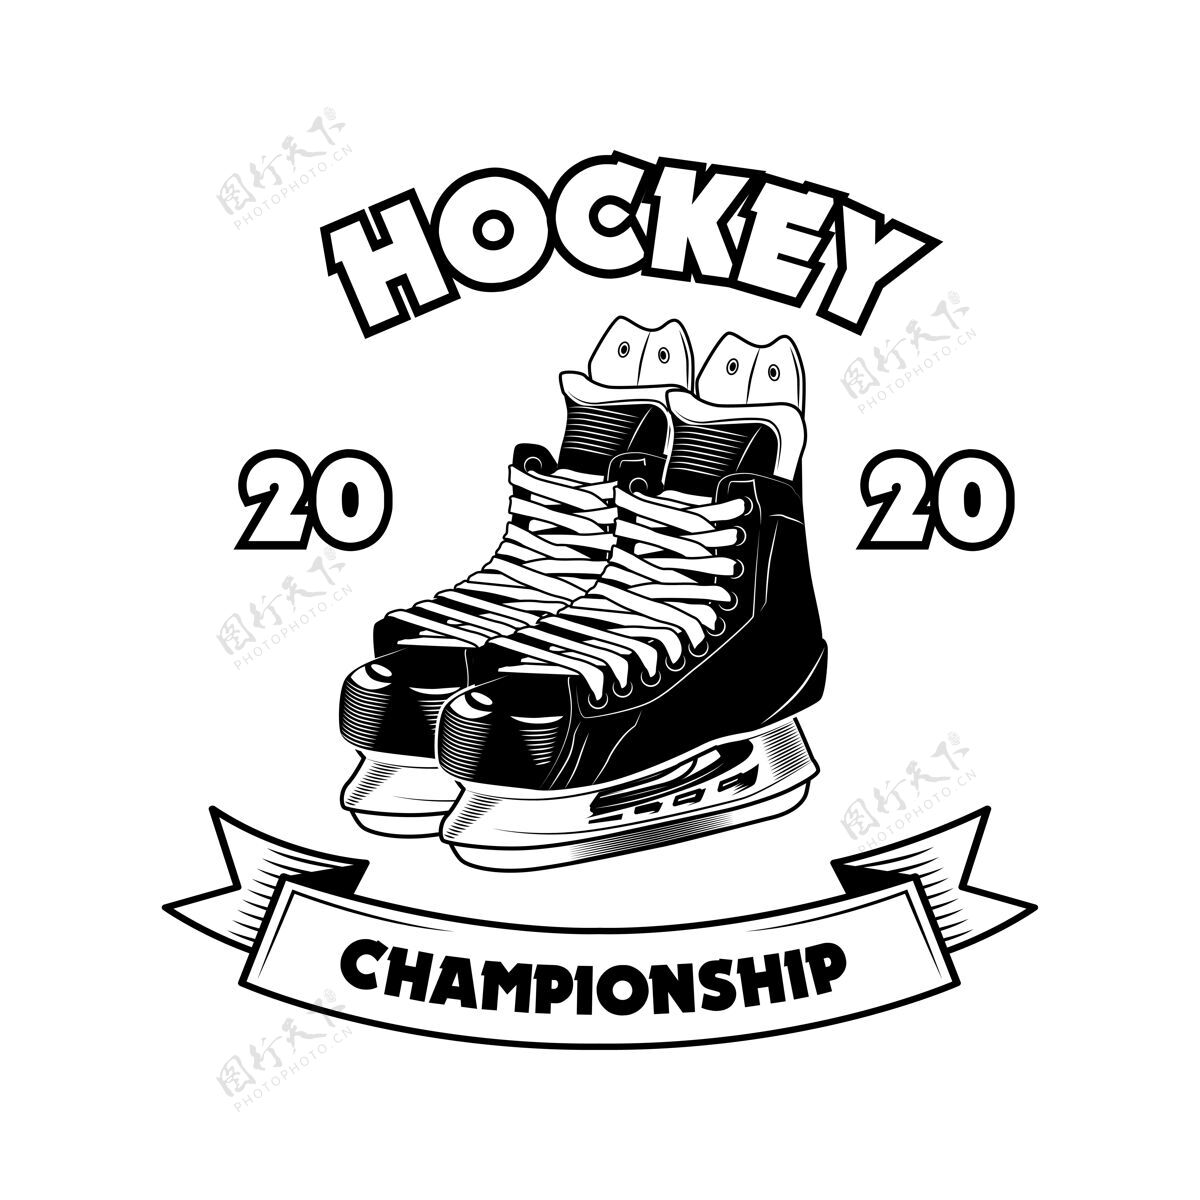 绘画曲棍球锦标赛符号矢量插图冰鞋和丝带上的文字标志和标签模板体育学校的概念球迷运动社区